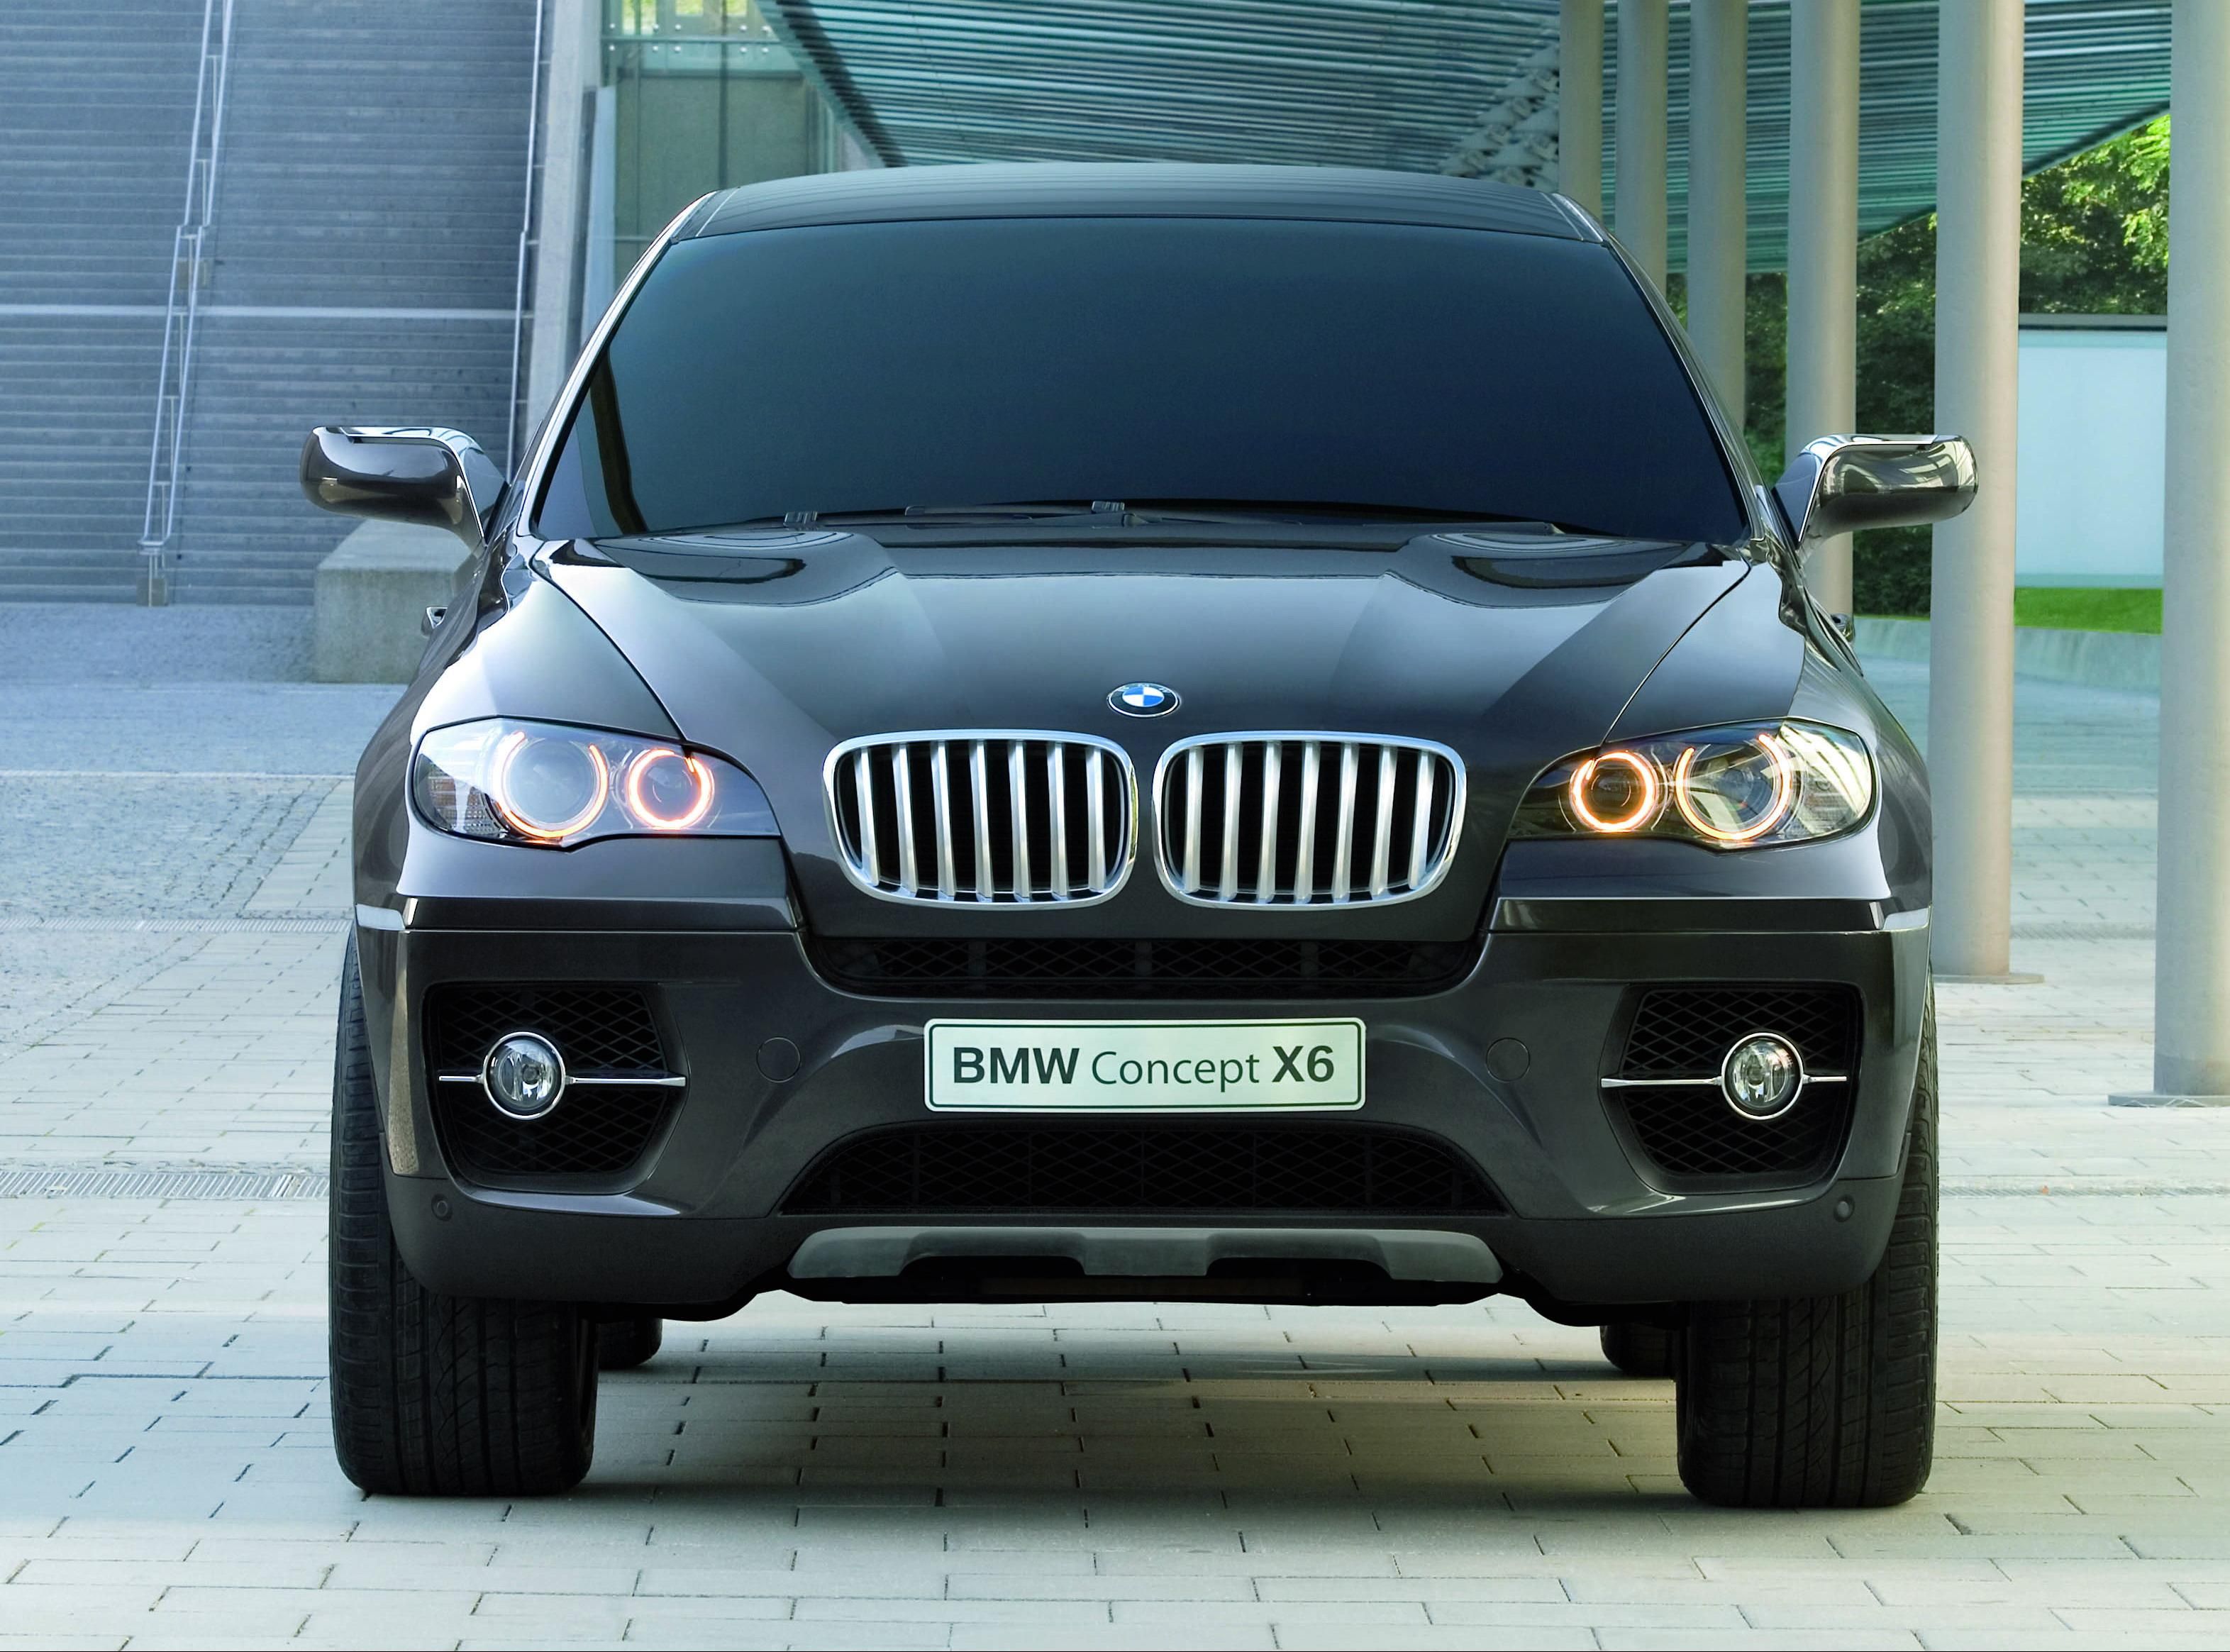 2008 BMW X6 Concept